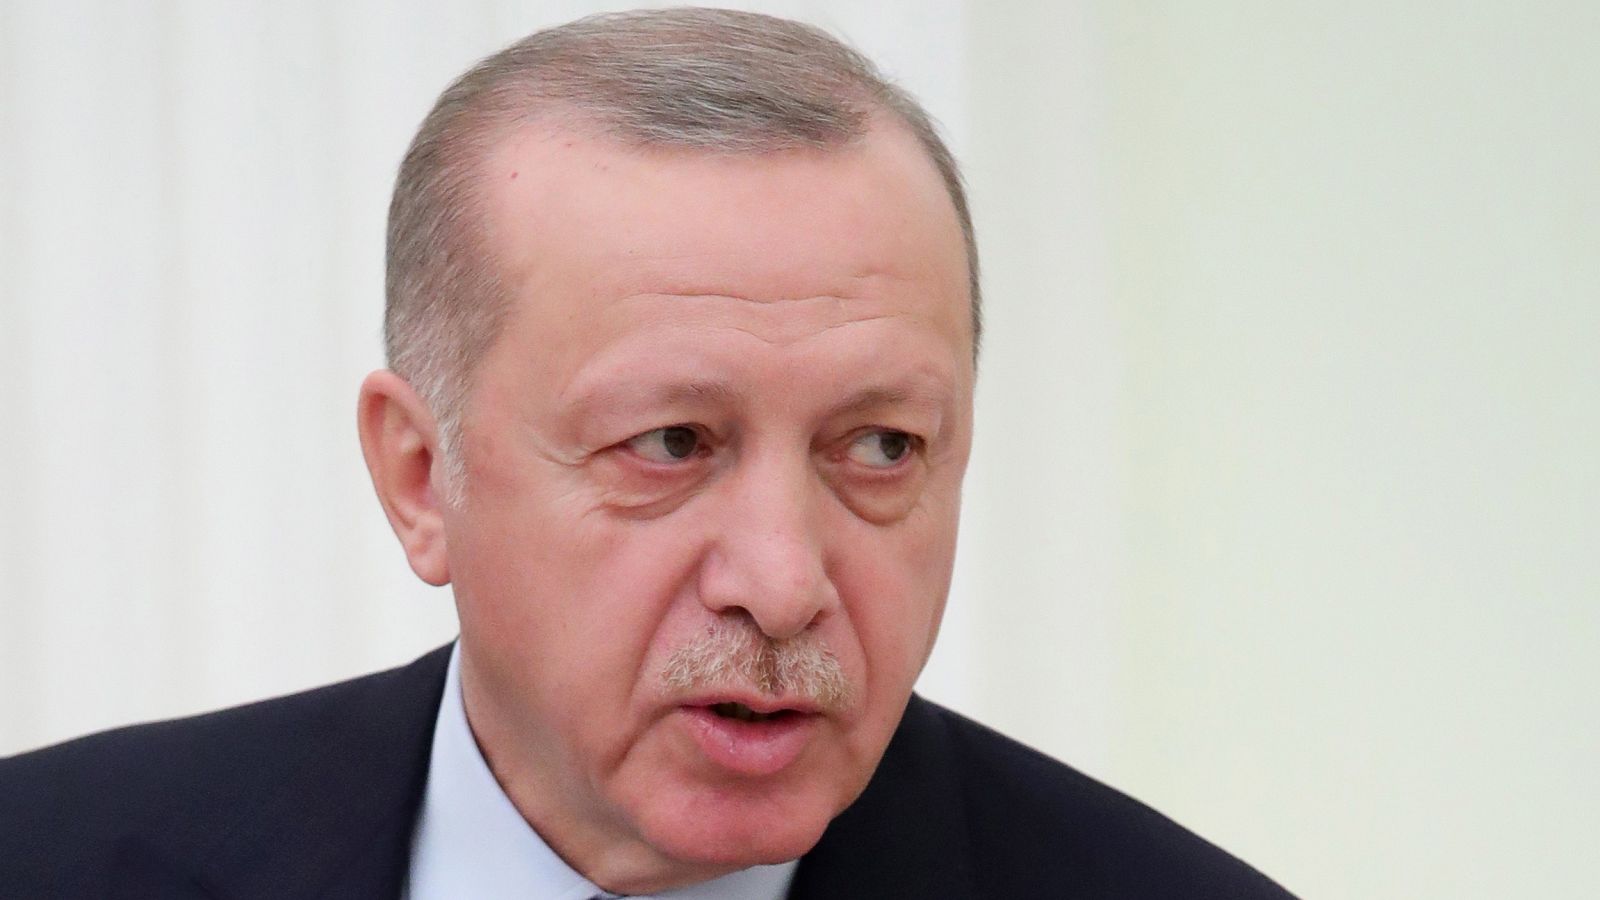 El presidente turco, Recep Tayyip Erdogan, en una imagen del 5 de marzo de 2020.